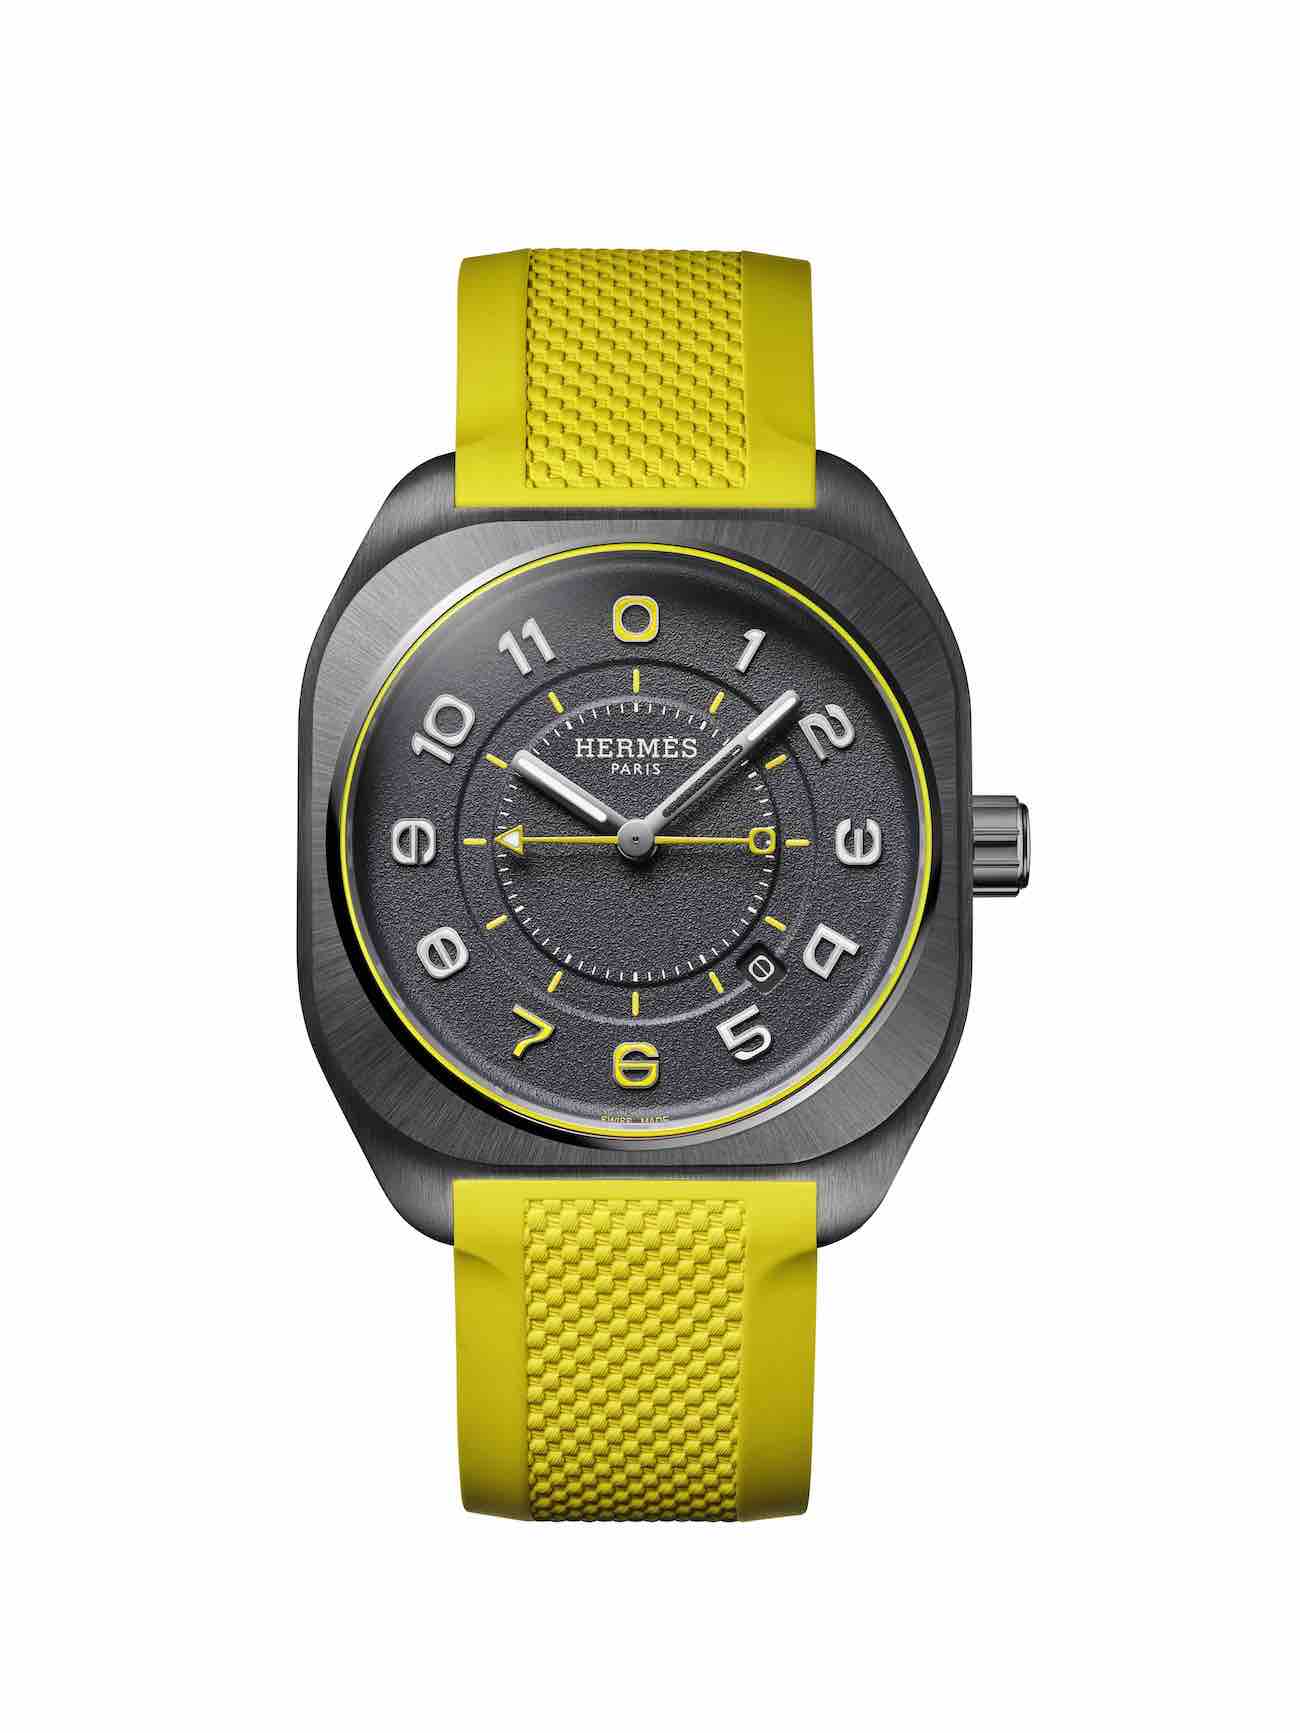 The H08 Madison Flagship watch. Photo via Hermès.